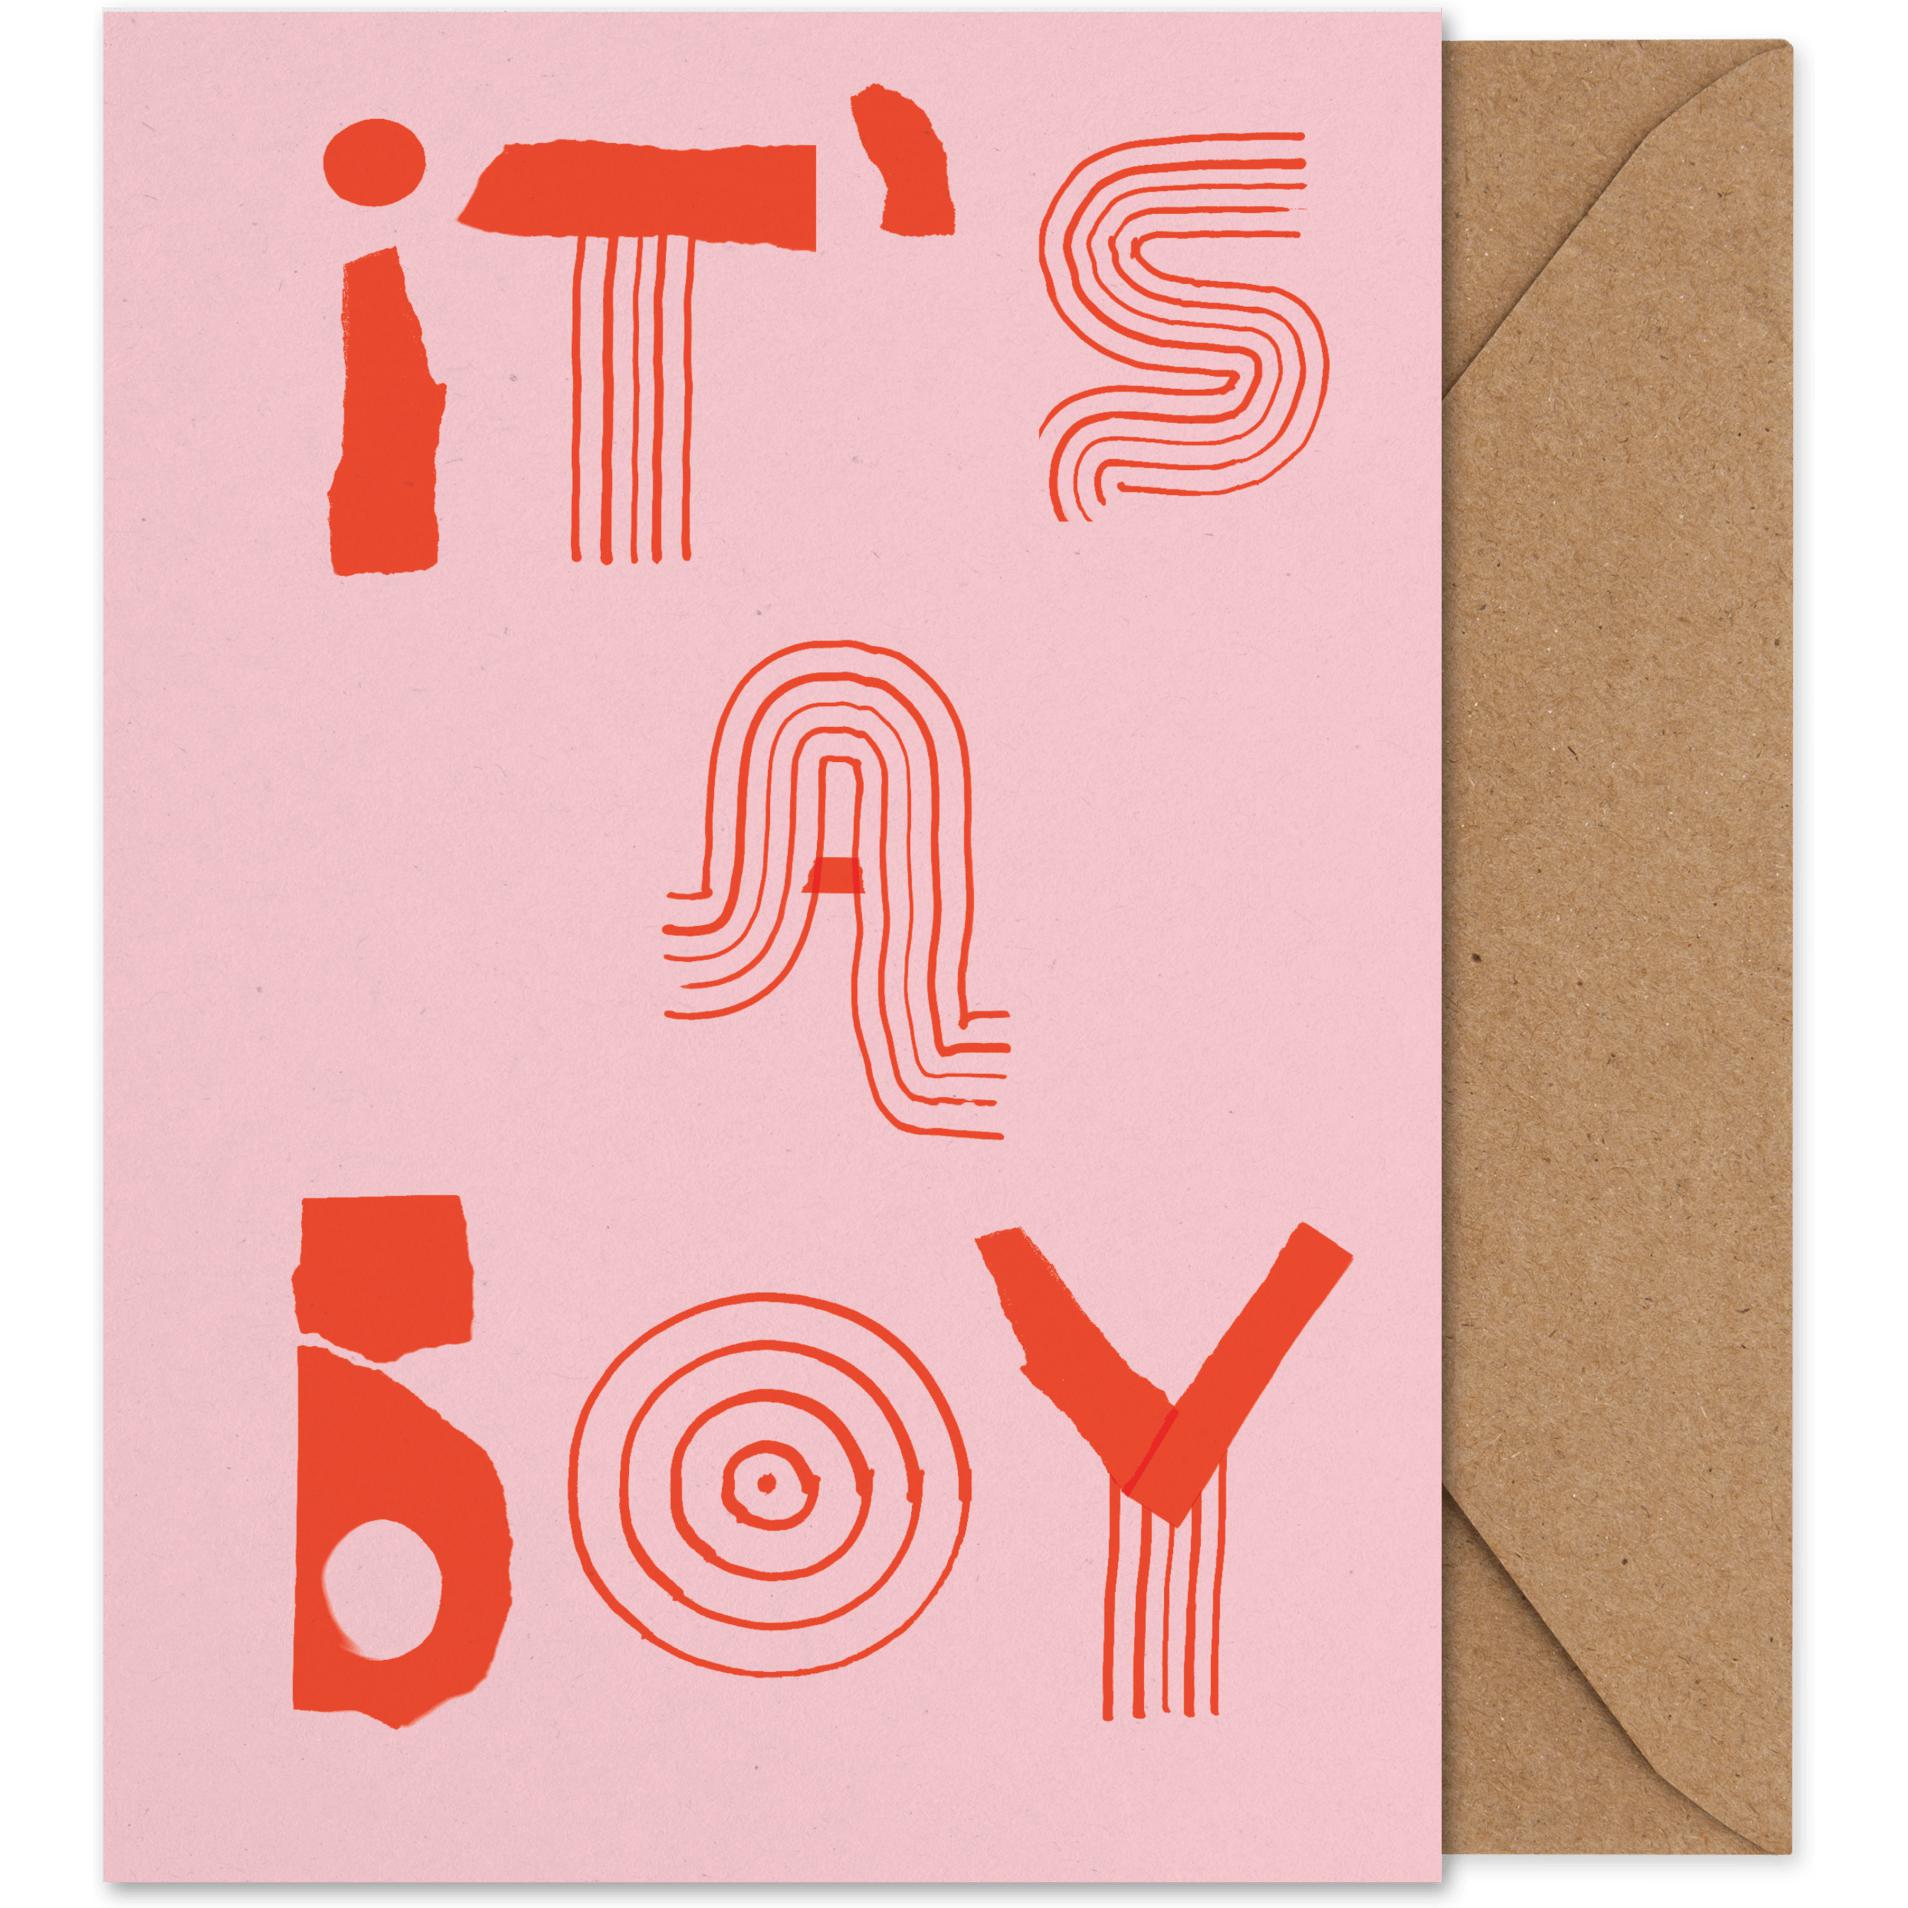 Paper Collective Det är ett pojkekonstkort